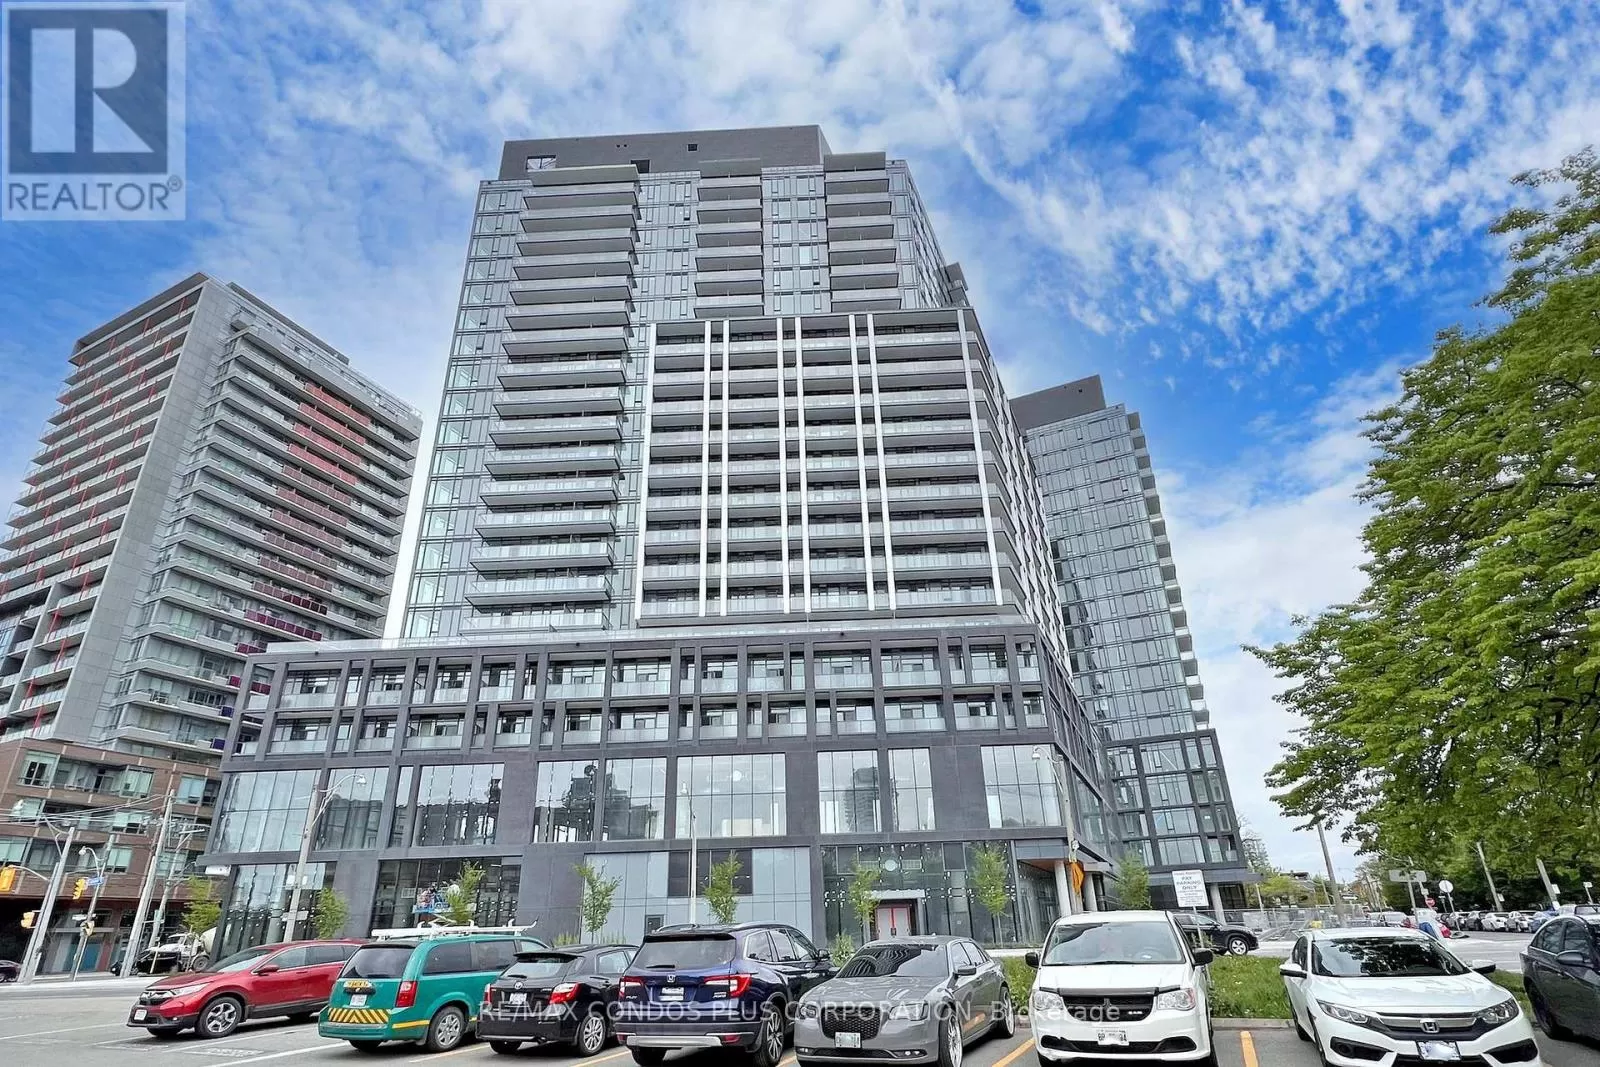 Apartment for rent: 713 - 50 Power Street, Toronto, Ontario M5A 0V3